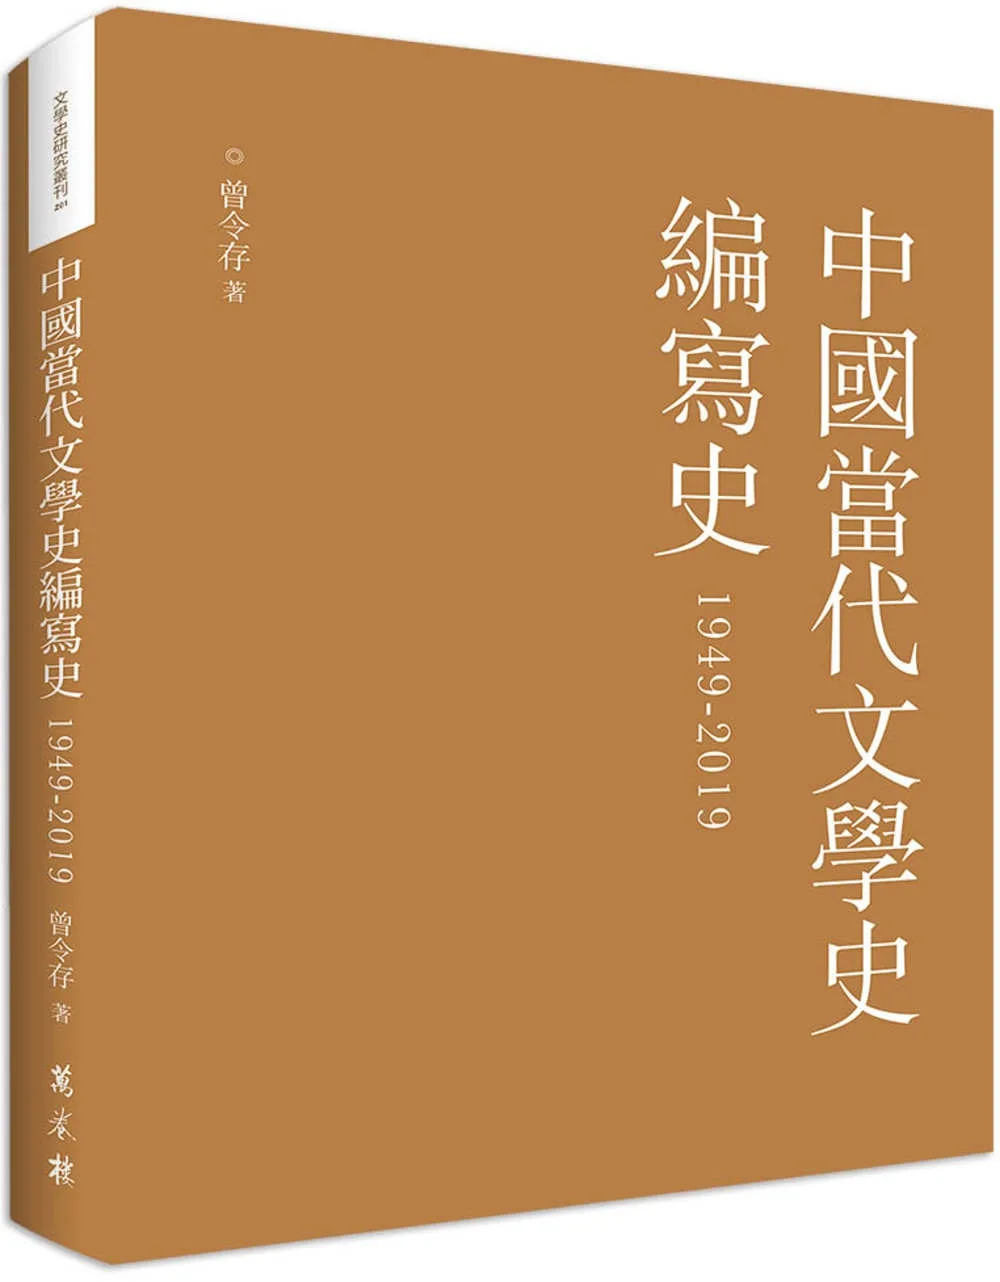 中國當代文學史編寫史1949-2019